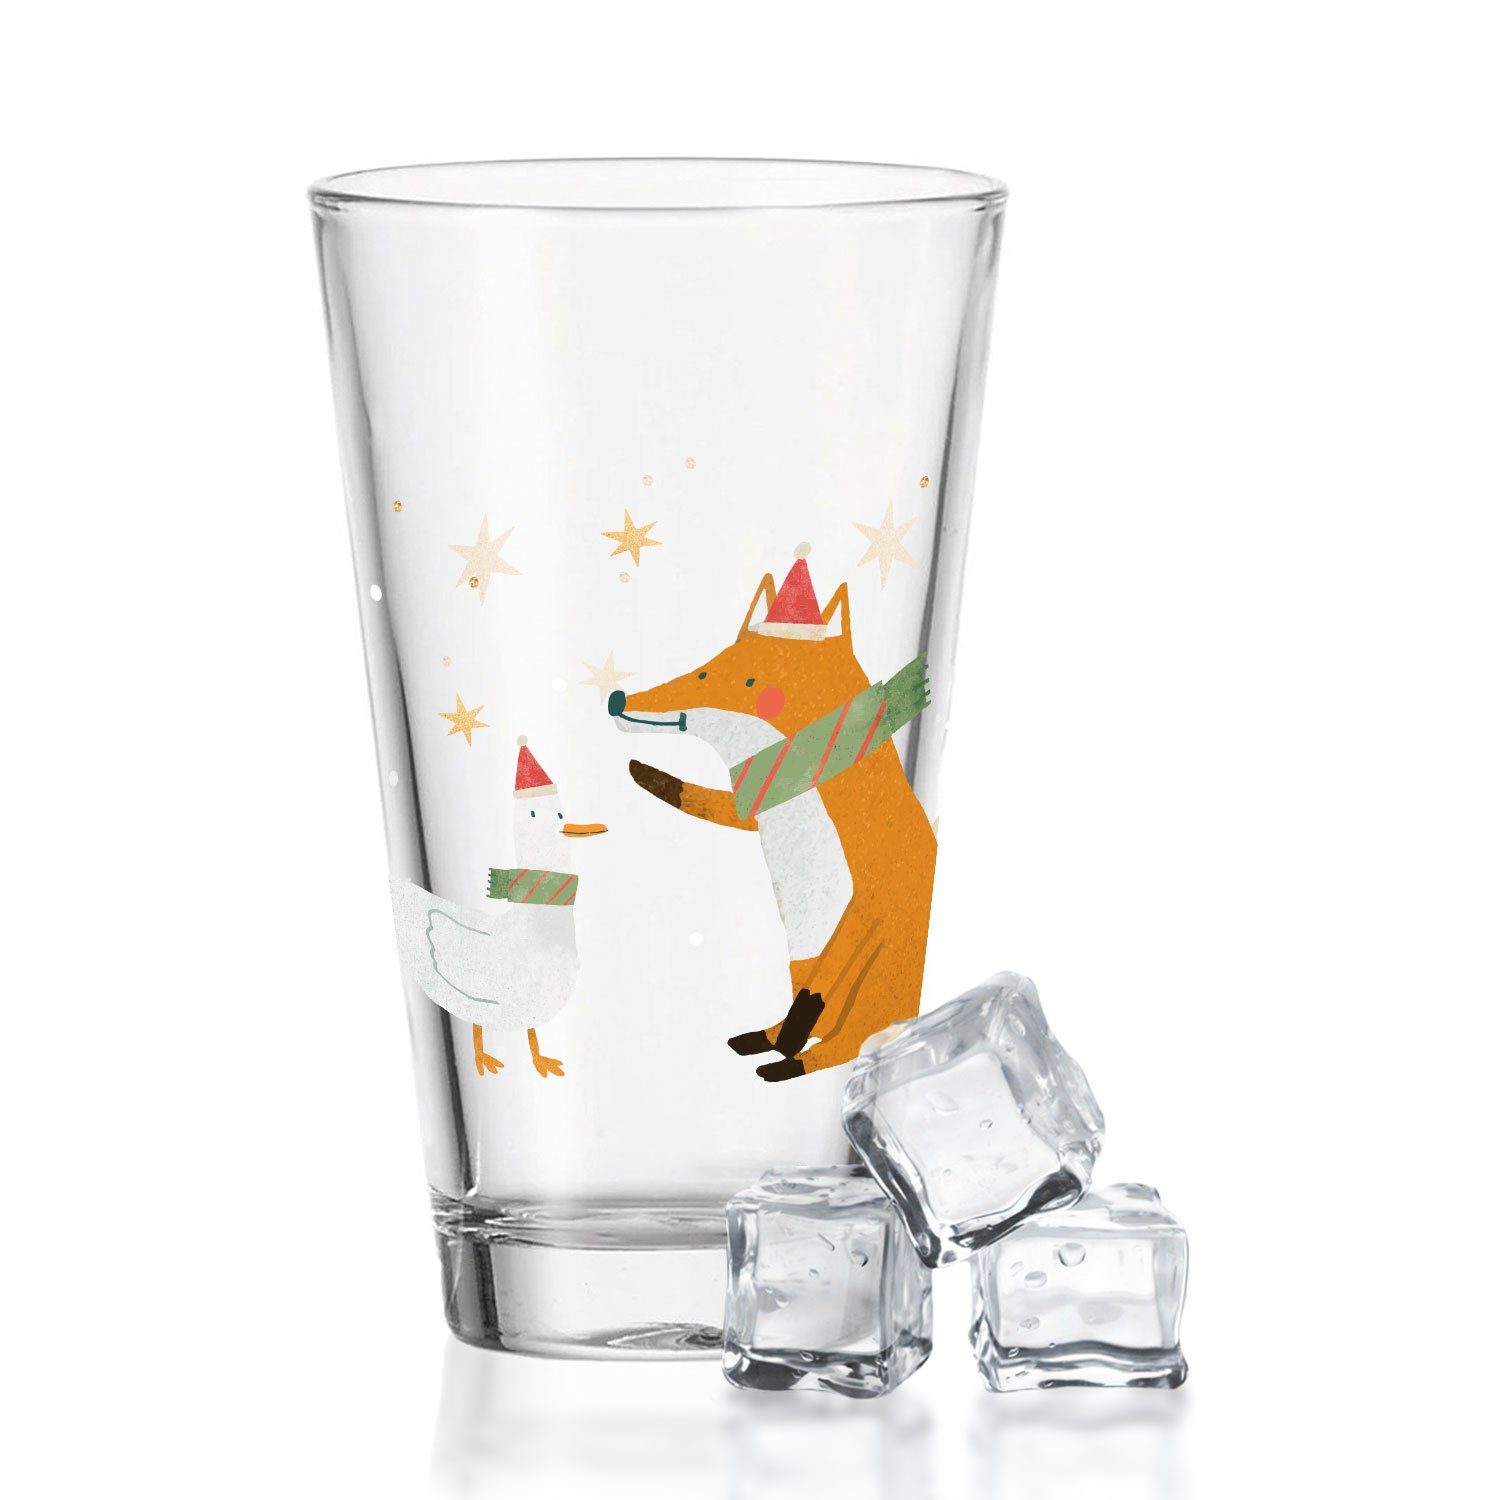 GRAVURZEILE Glas mit UV Druck Weihnachtsmotiv, - Winterfuchs und Gans - Weihnachtsdeko, Zur Weihnachtszeit zum Wichteln und als Geschenk für Kinder